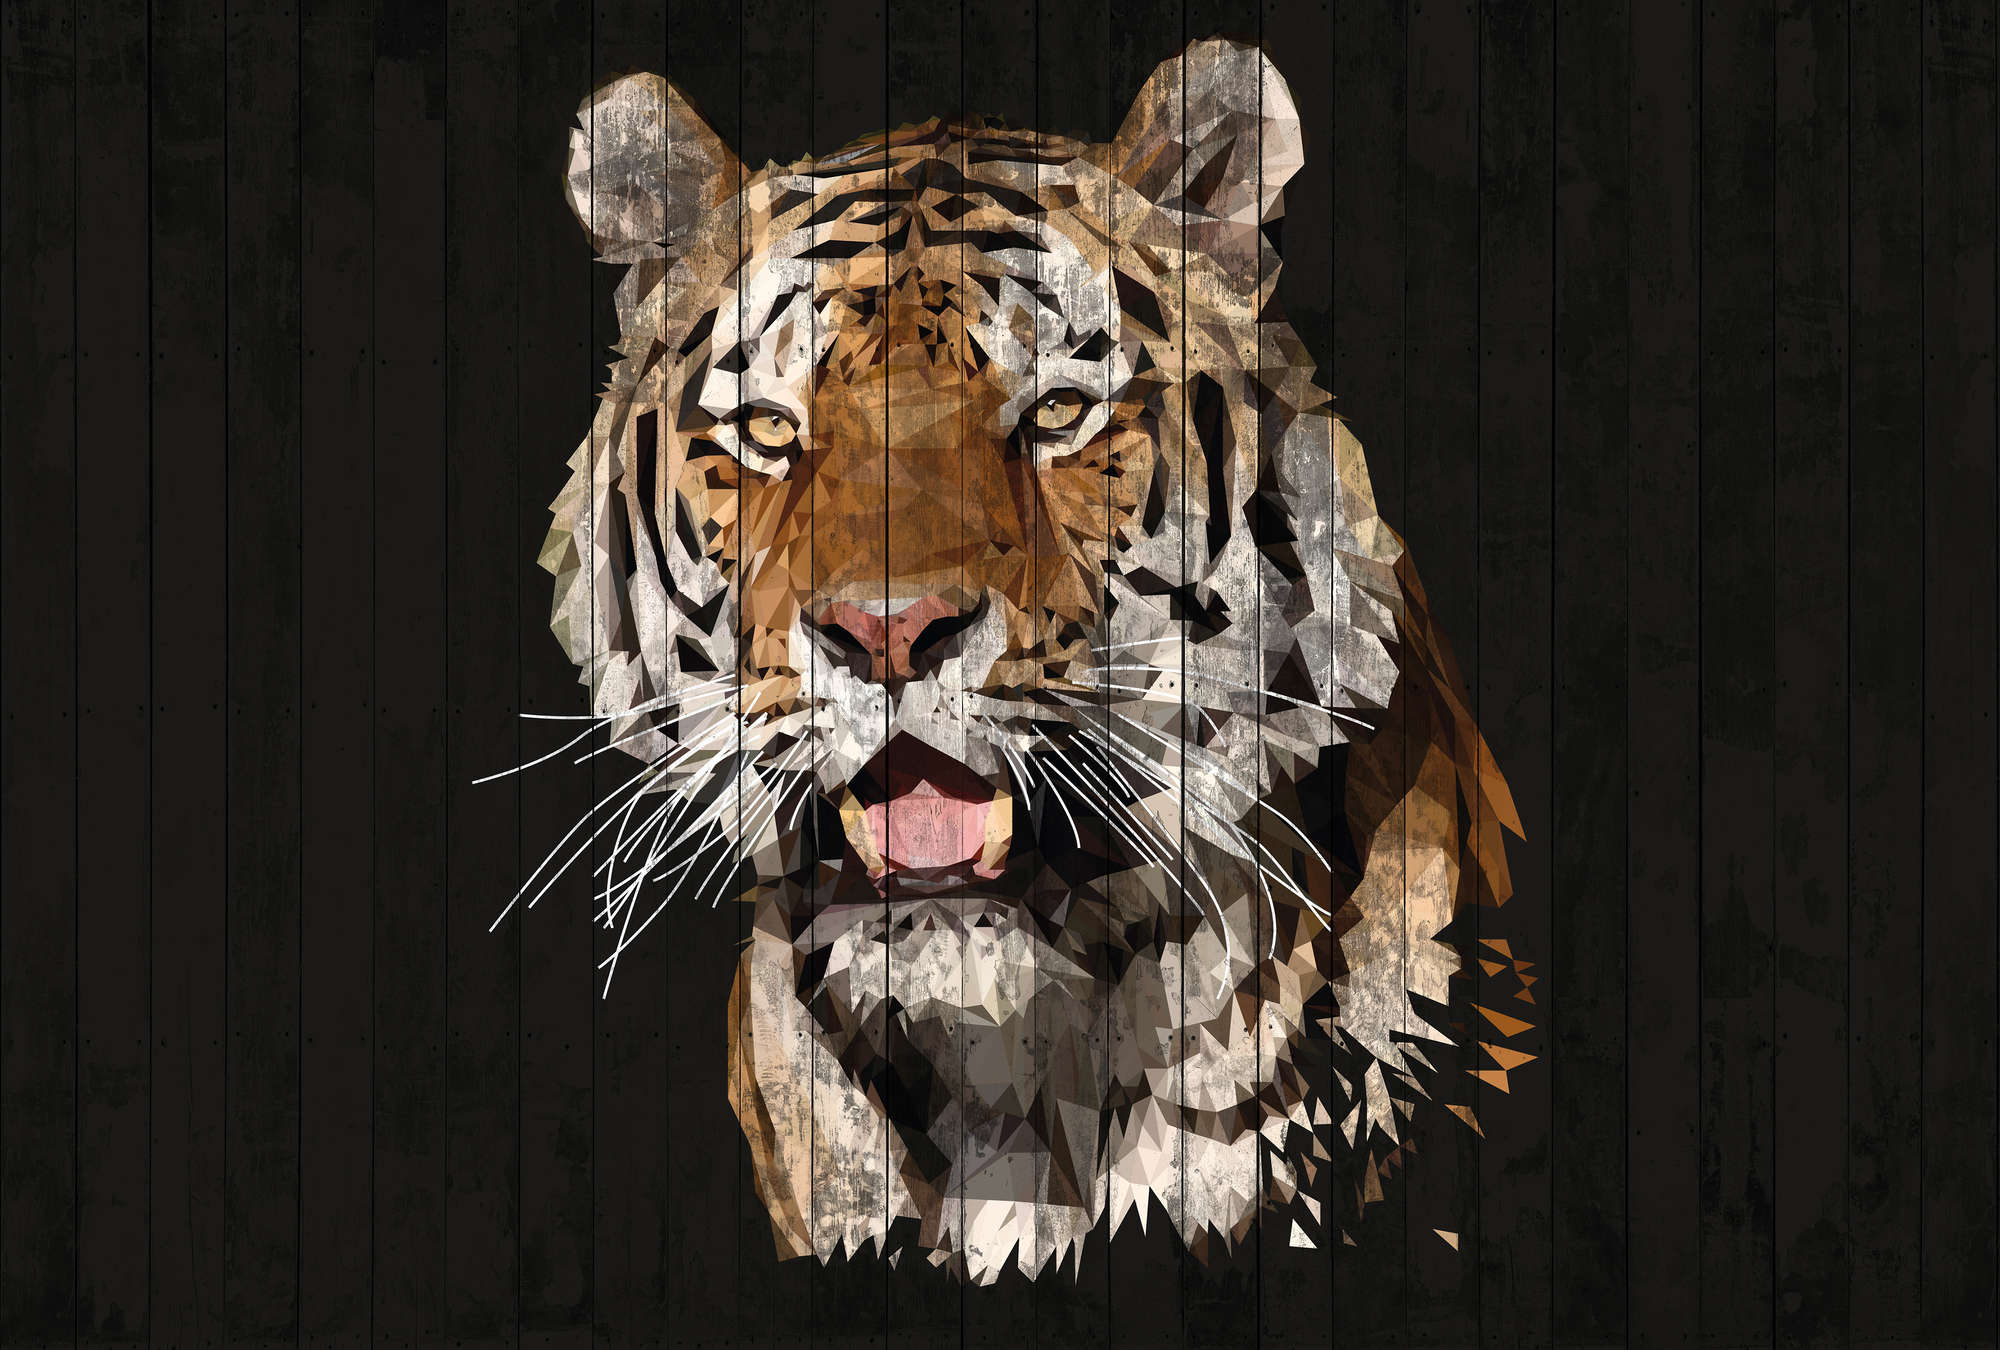             Fotomurali Tiger con aspetto legno e stile poligonale - Marrone, Bianco, Nero
        